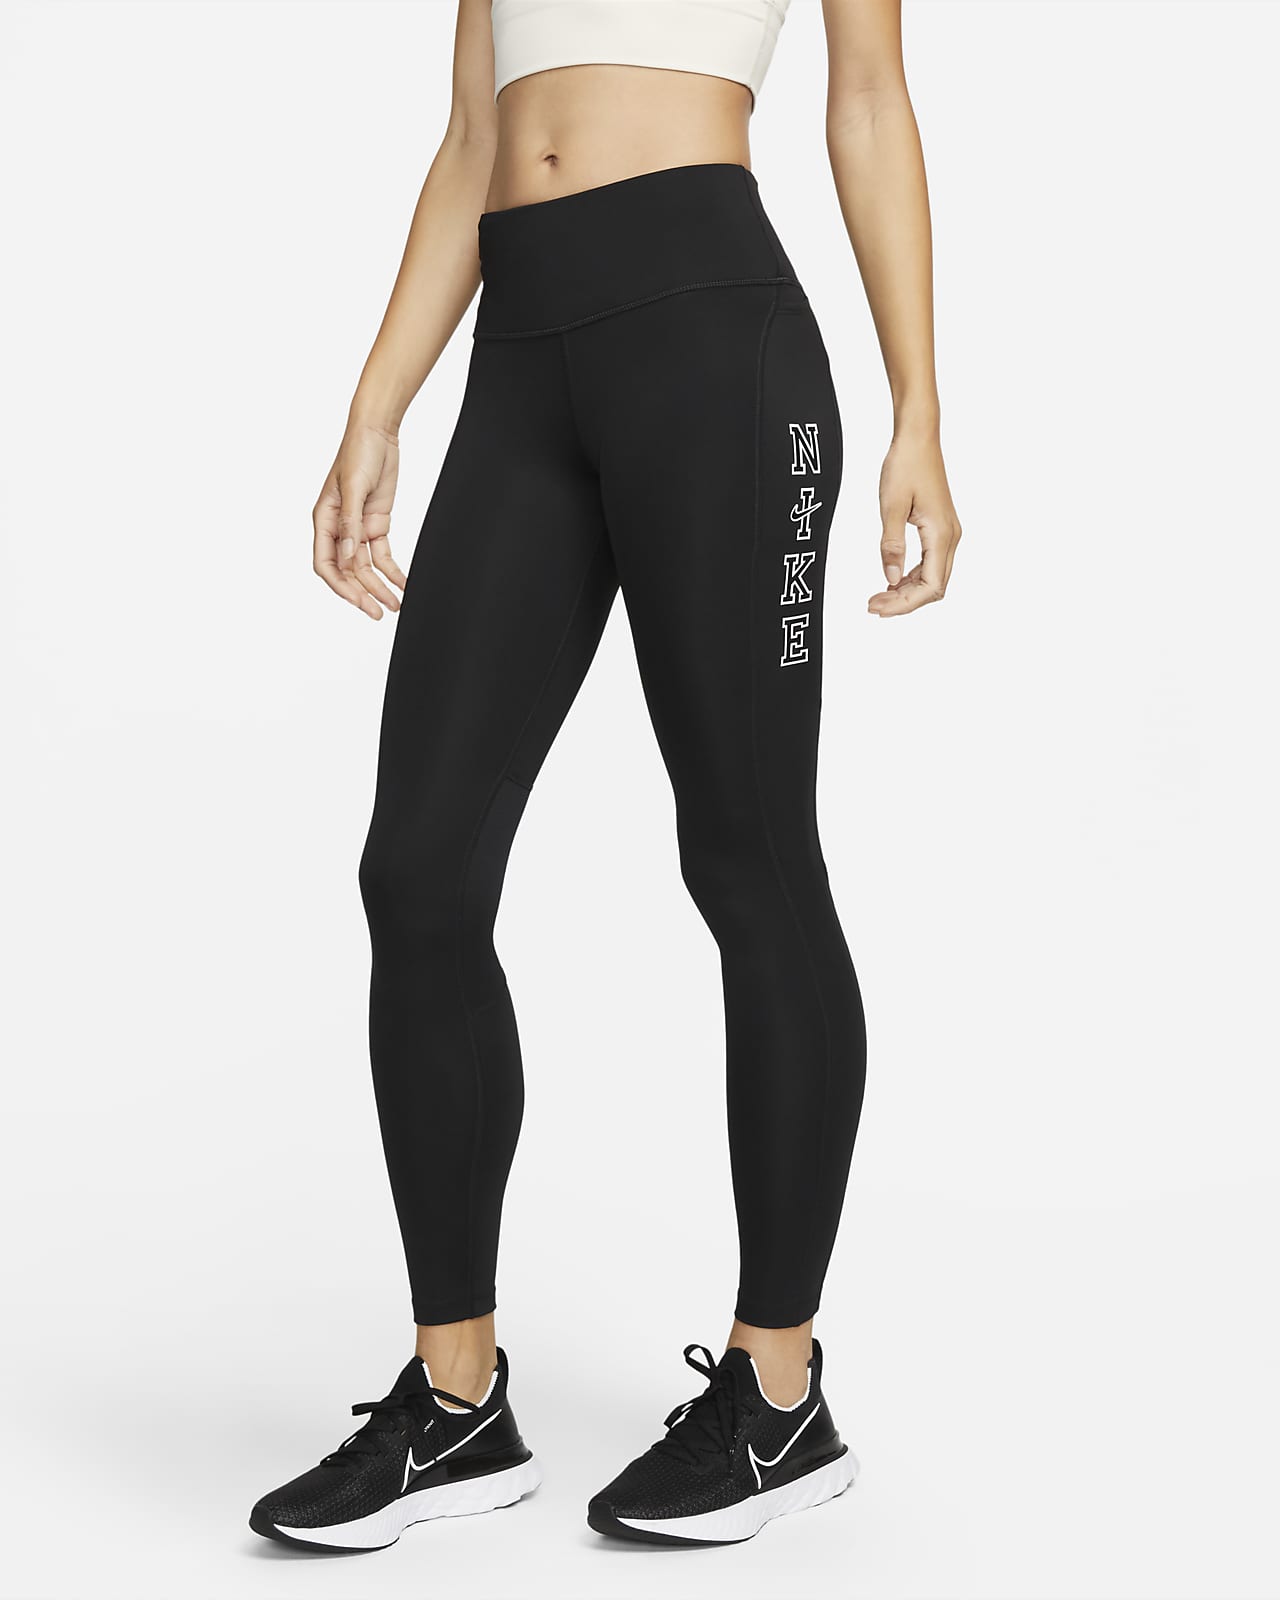 Legging 7/8 taille mi-haute avec poches Nike Epic Fast pour femme